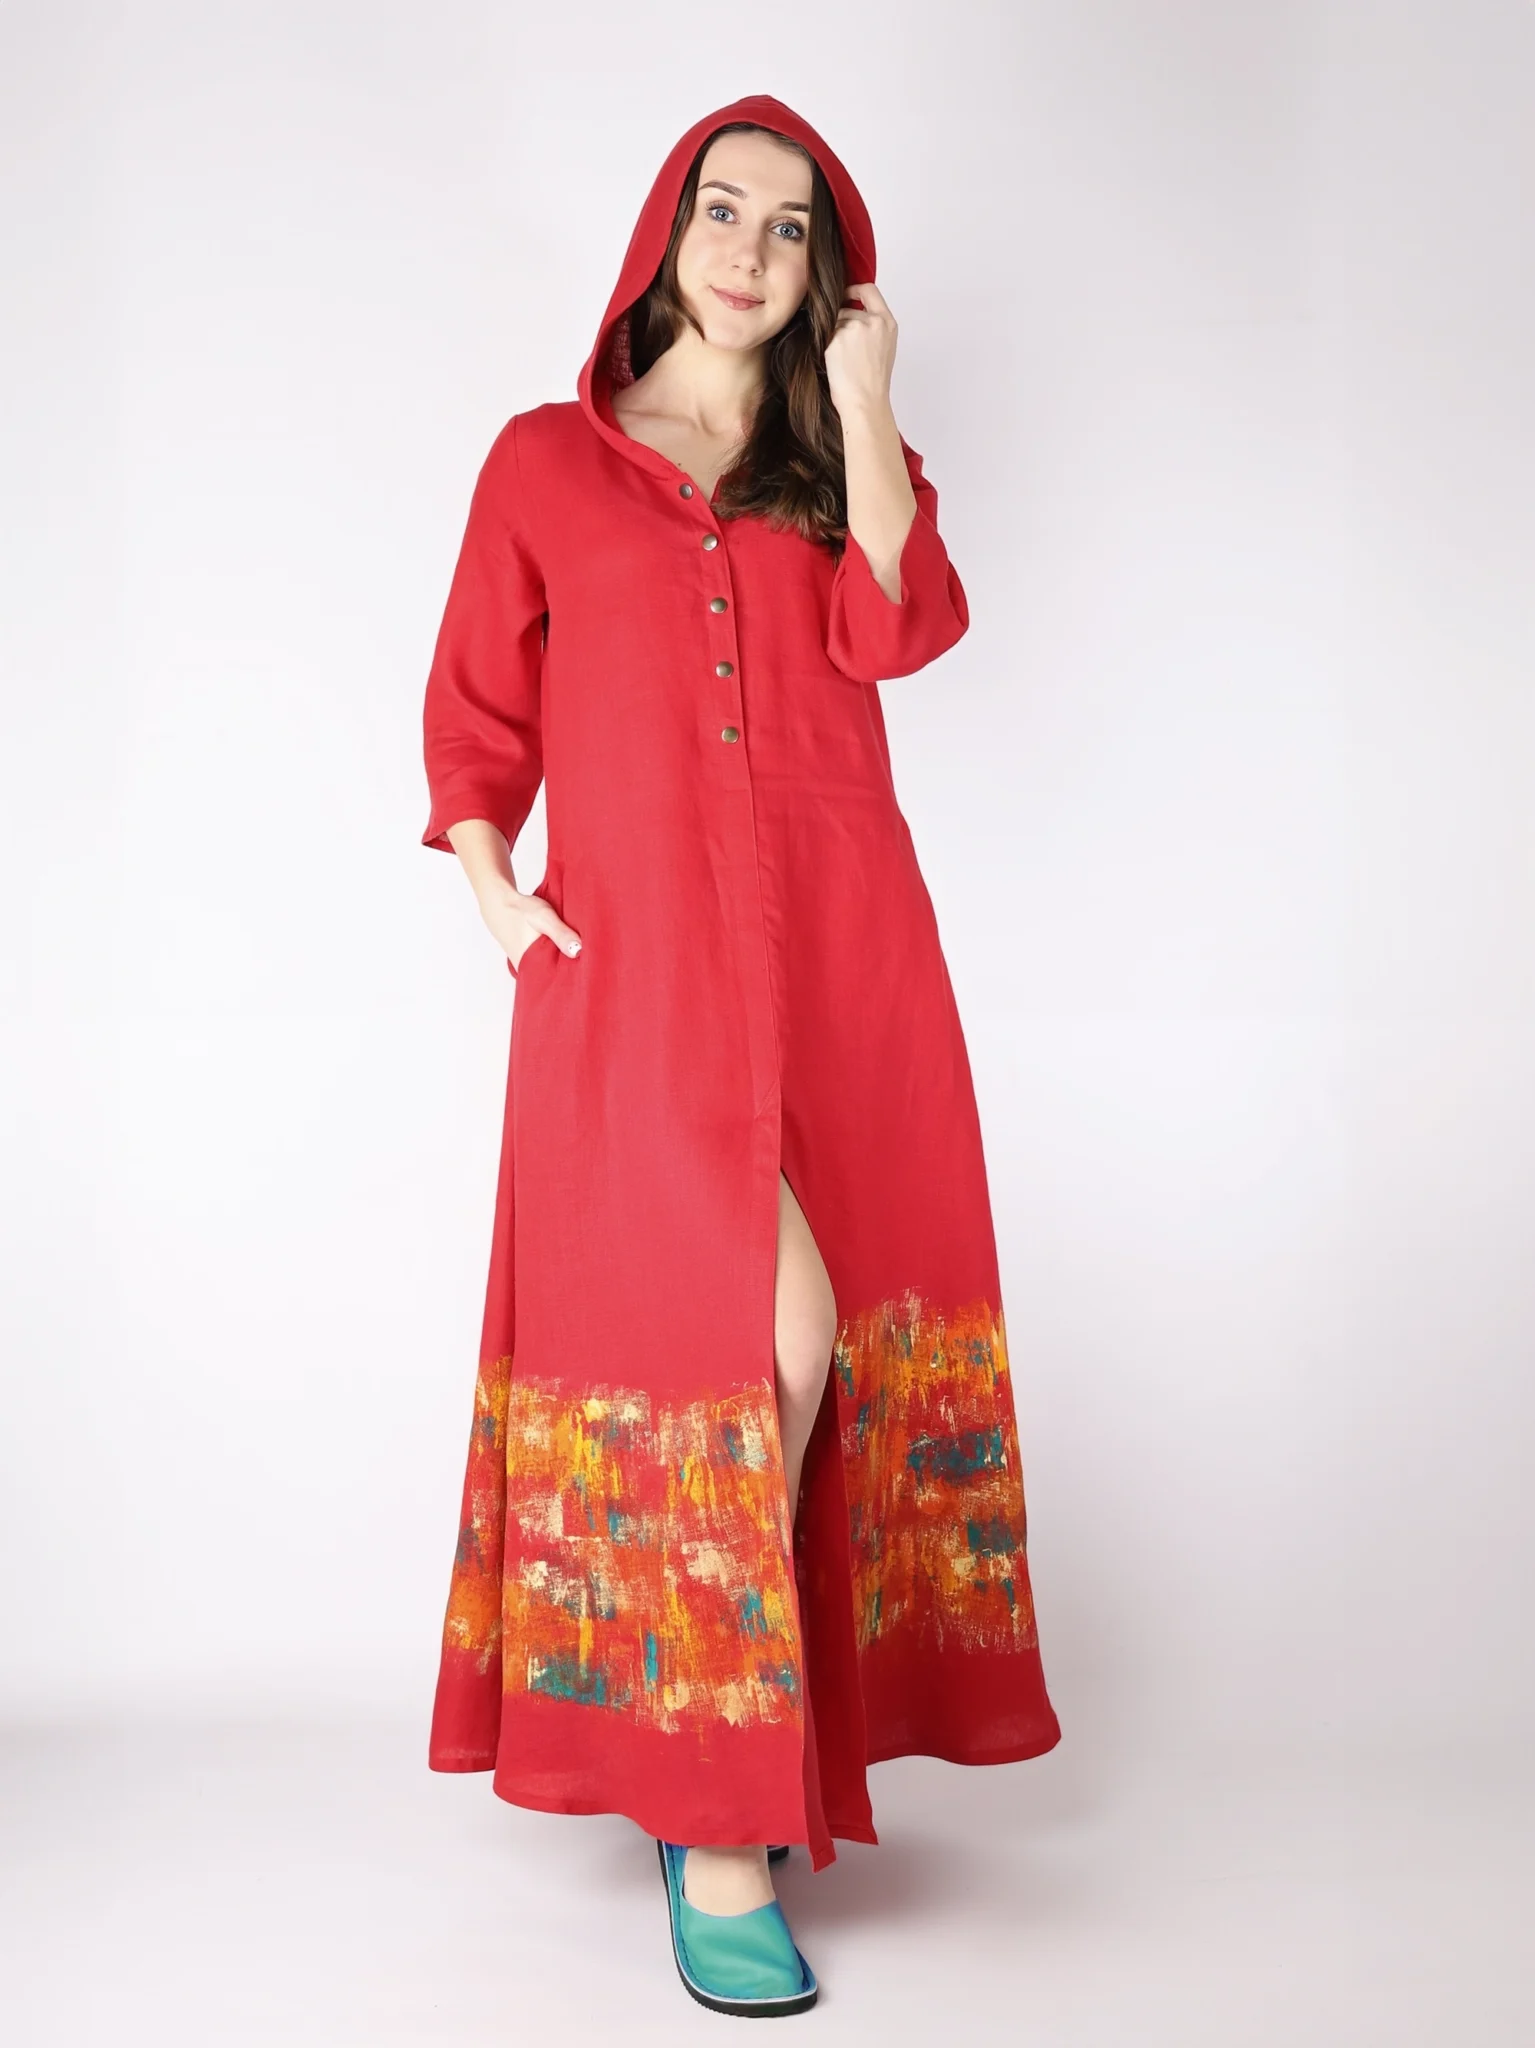 Czerwona, lniana sukienka rozpinana z kapturem, o długości maxi i fasonie trapezowym, malowana ręcznie.